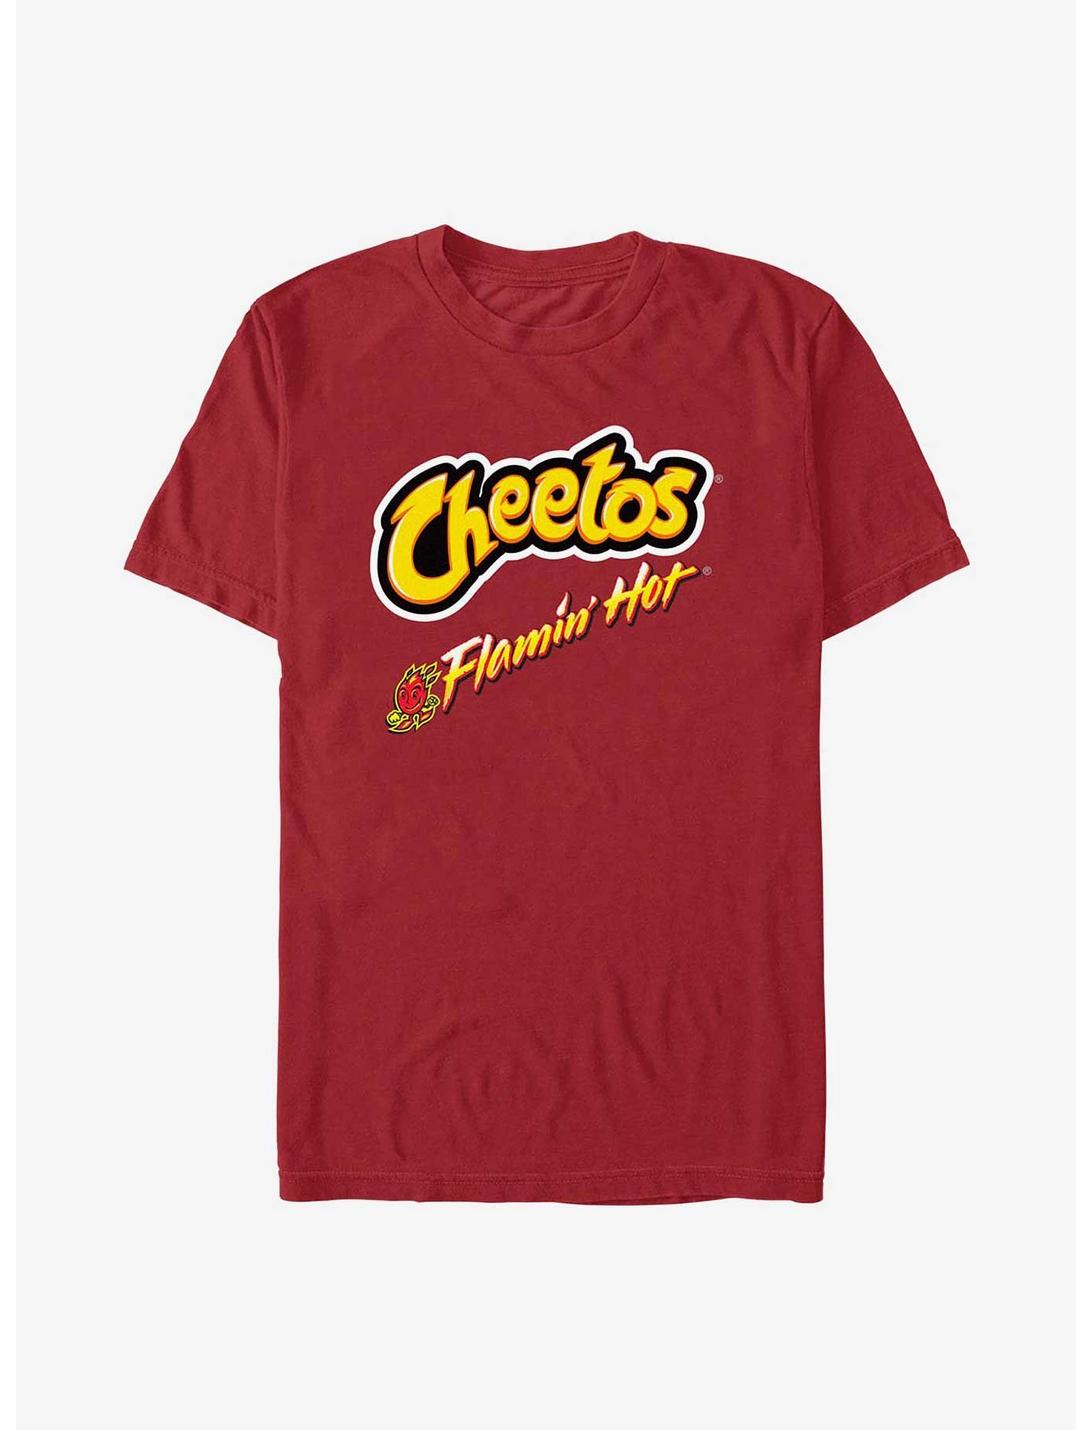 Cheetos Flamin Hot Fires T-Shirt, CARDINAL, hi-res